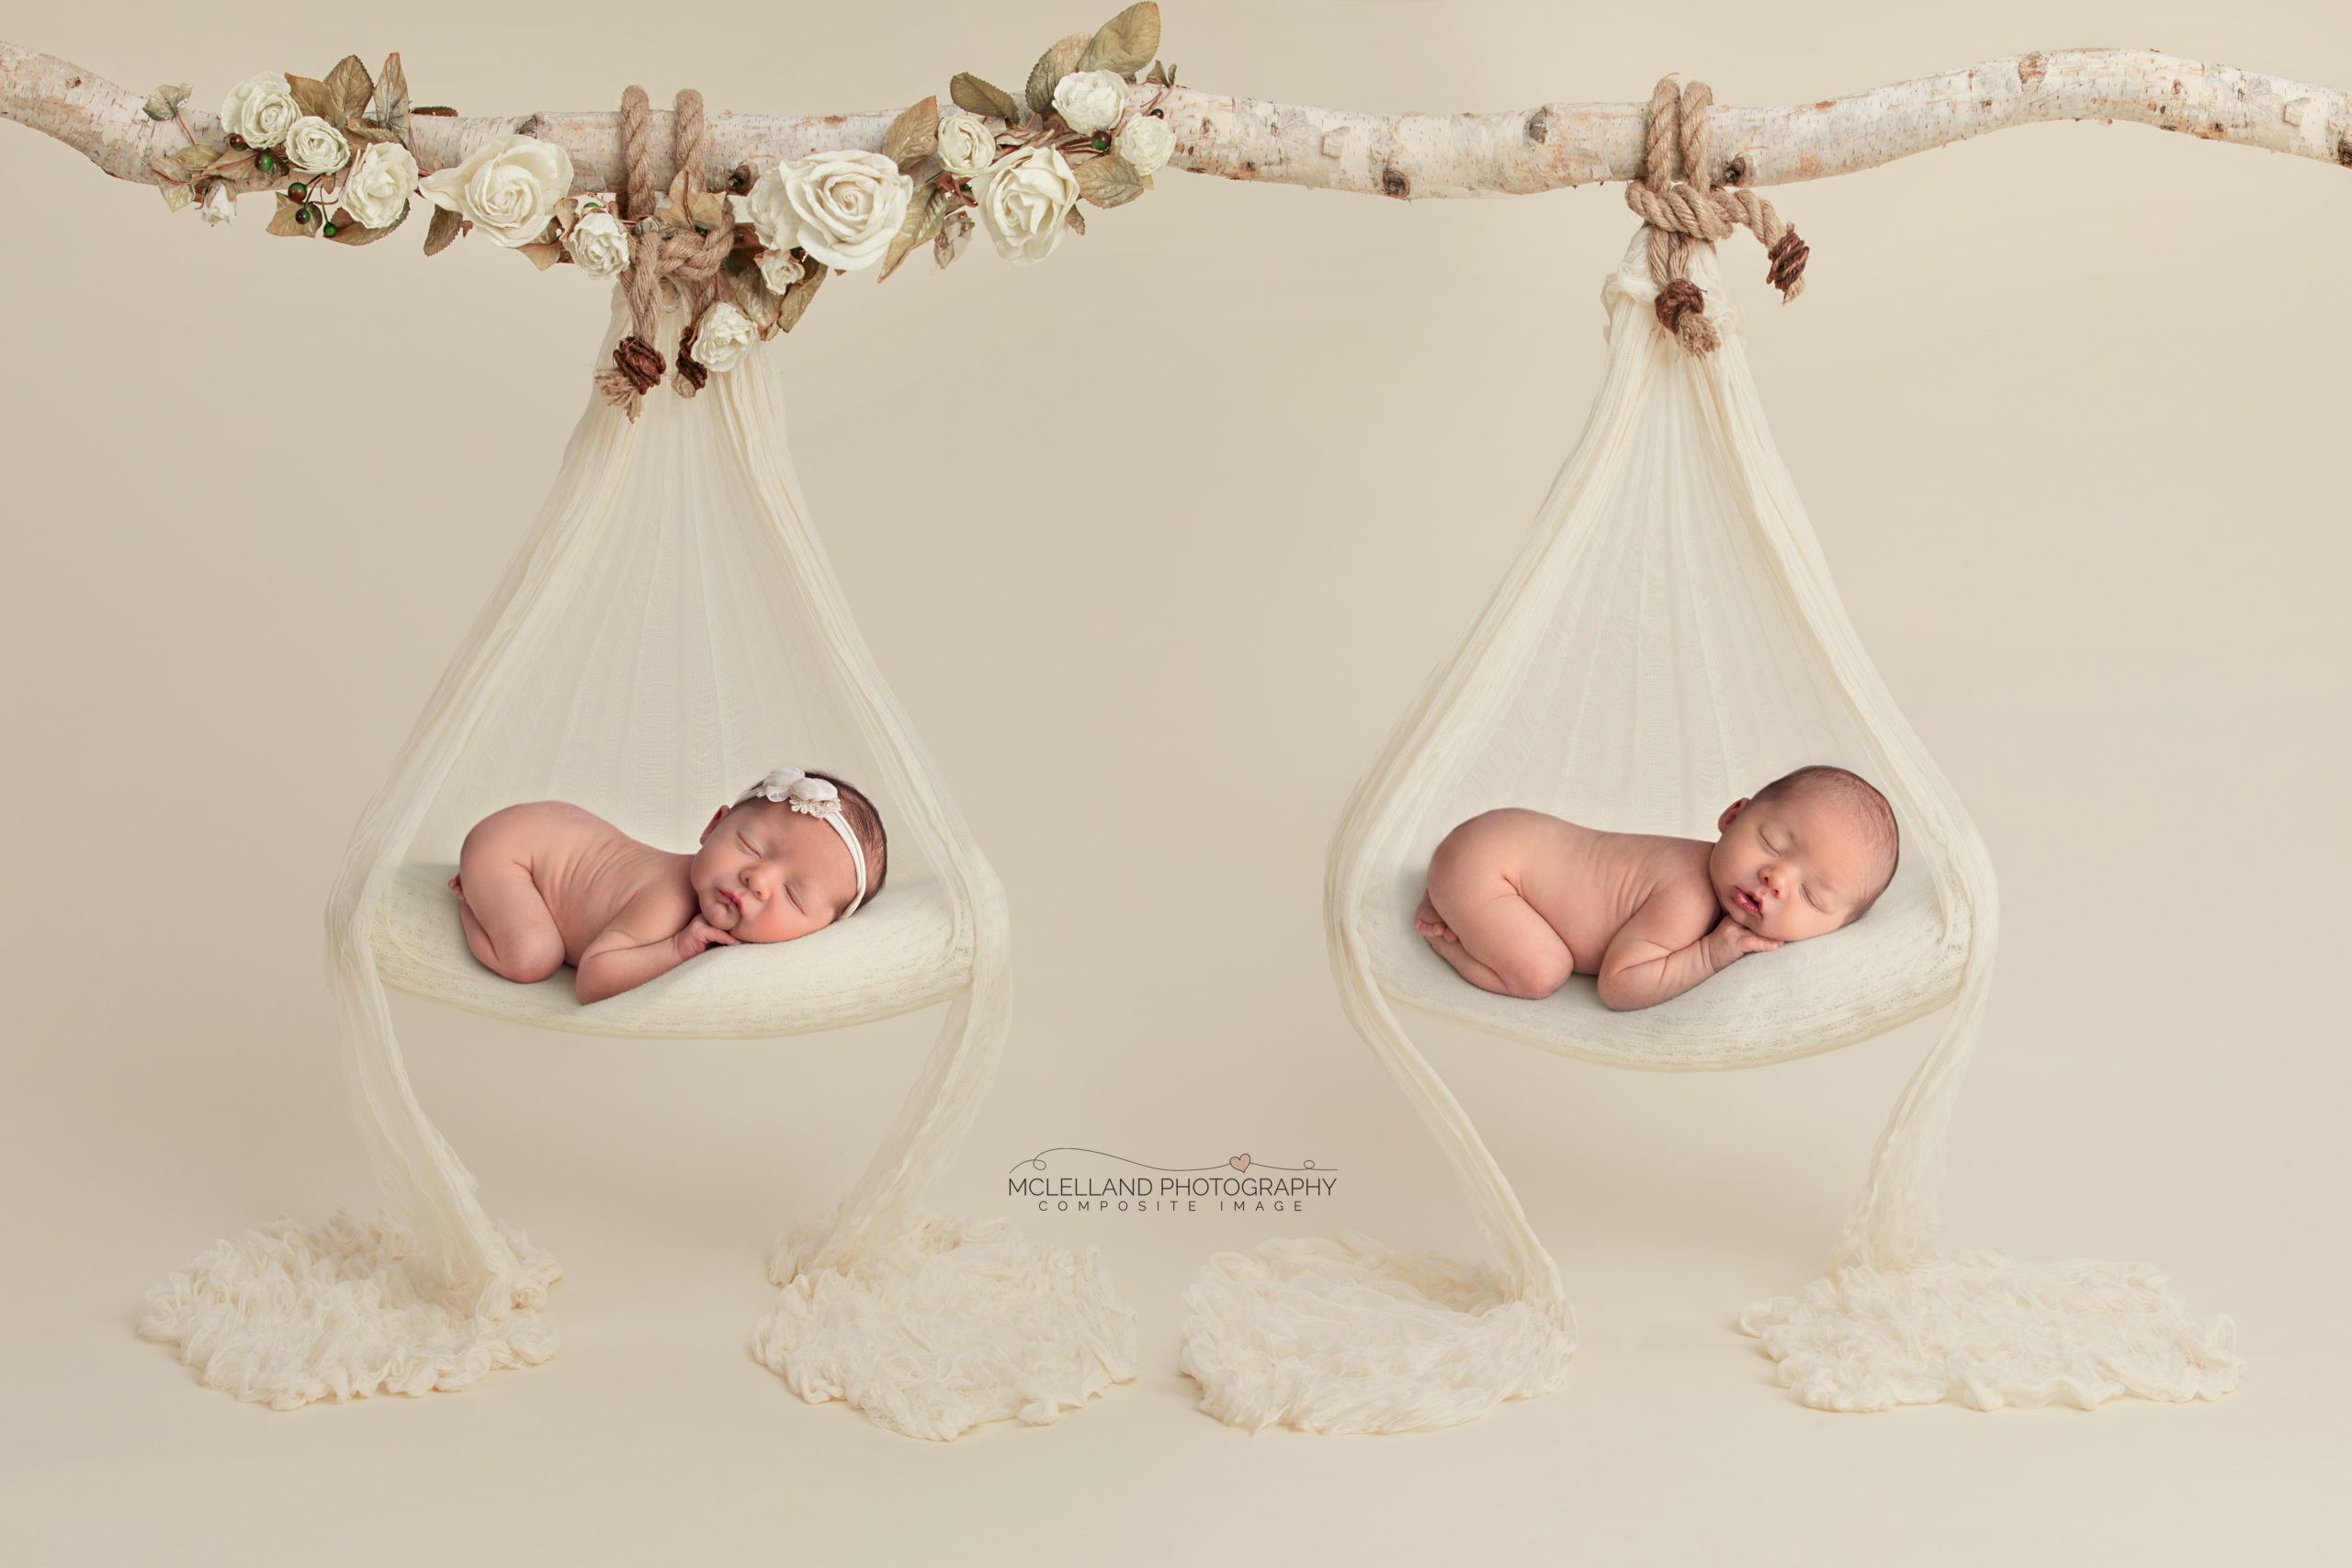 Creating newborn composite images